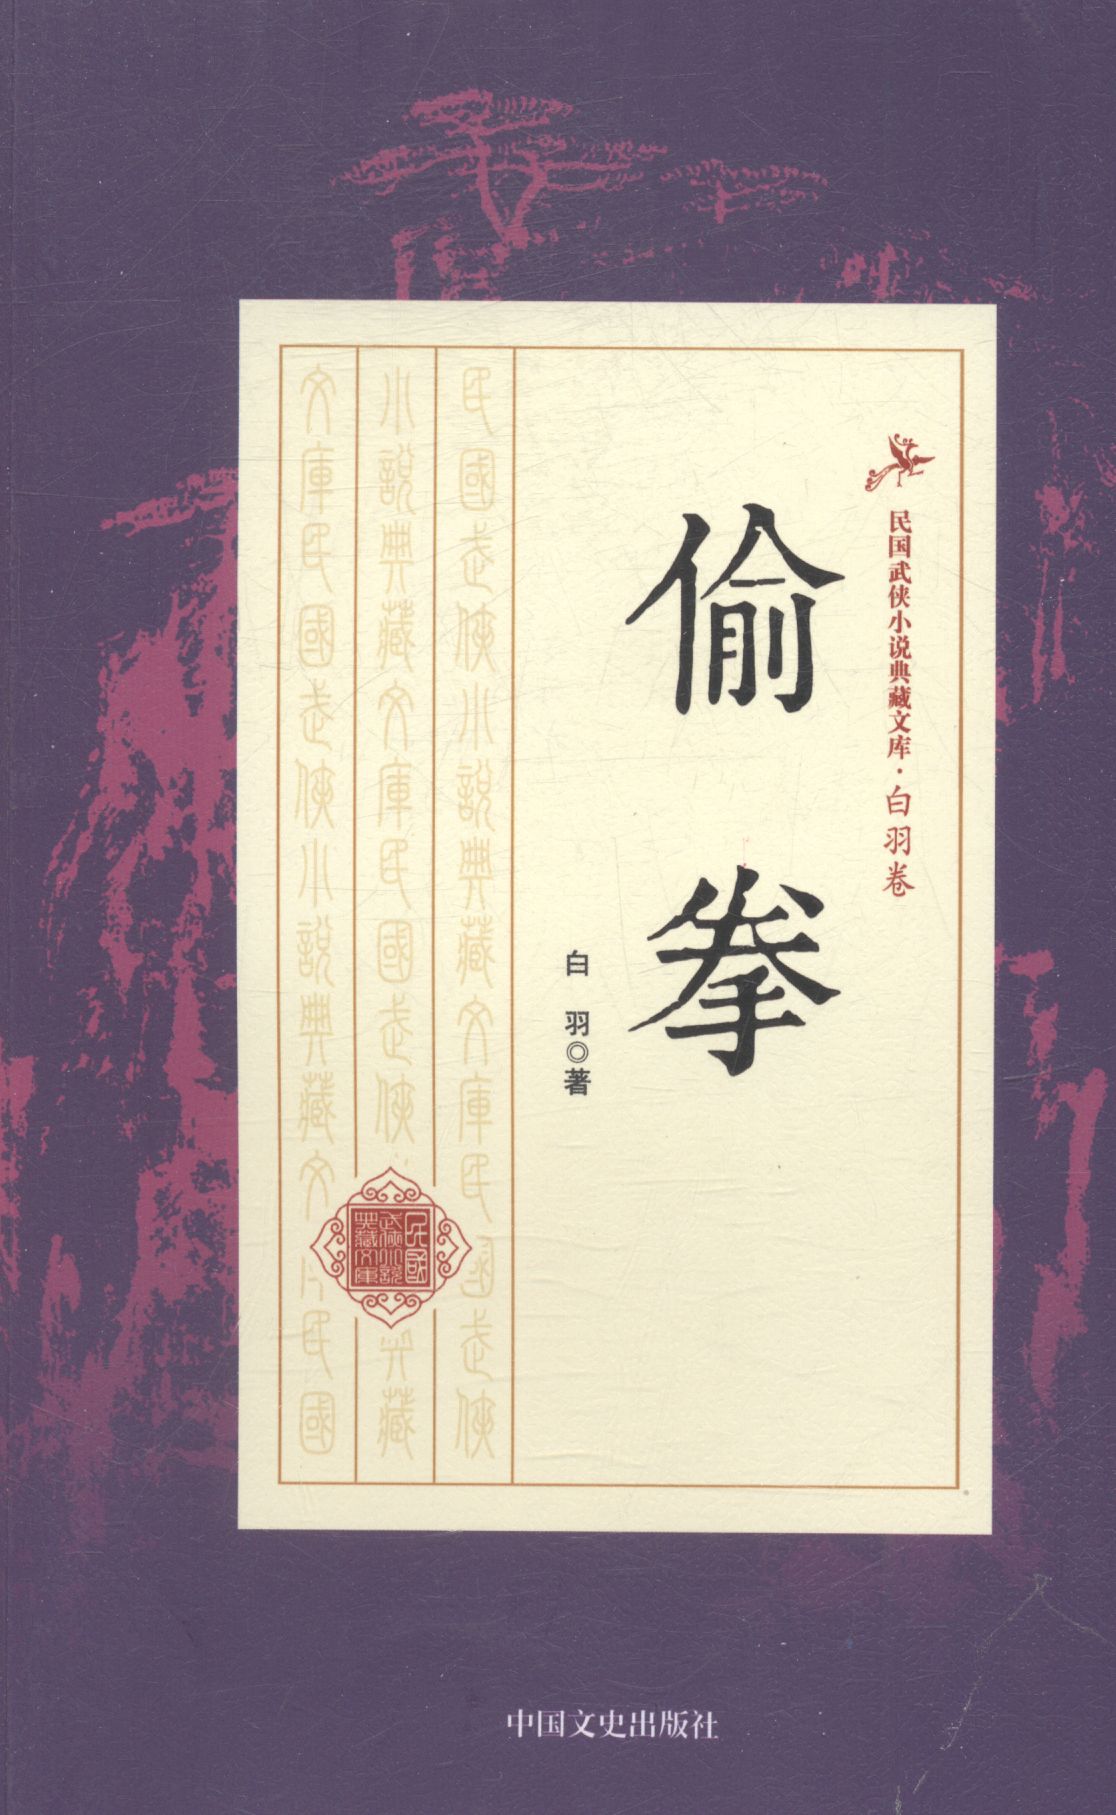 偷拳 小说 白羽著 中国文史出版社 9787503483653 mobi格式下载